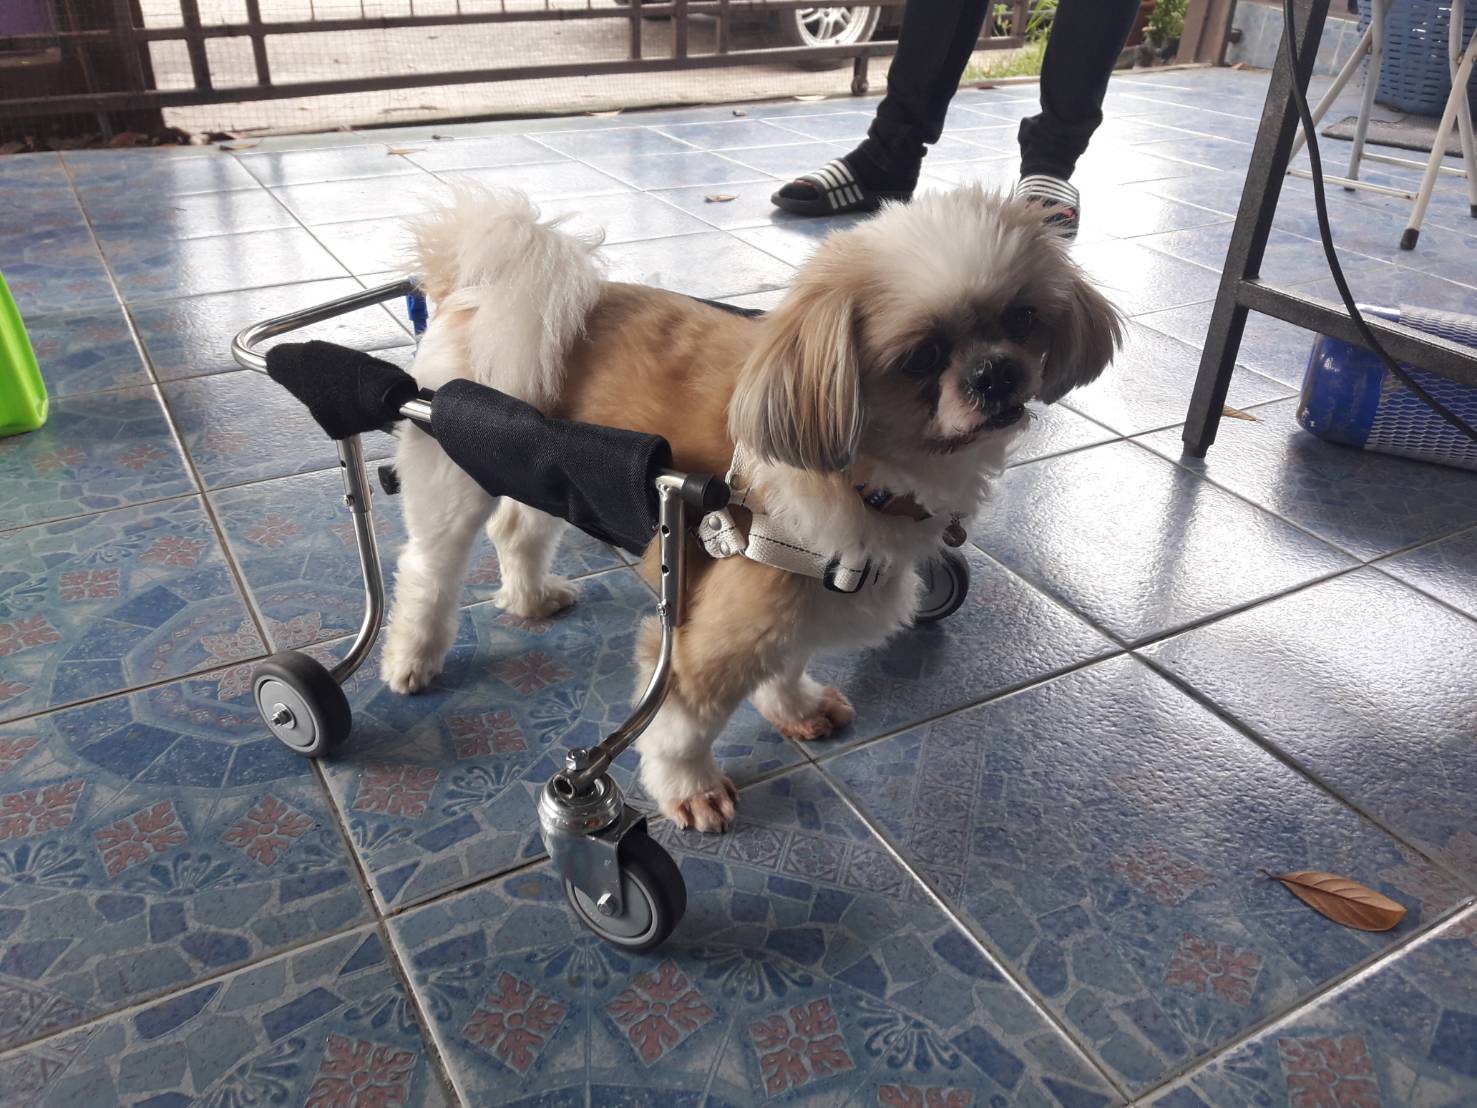 (ทักแชททุกครั้งตอนสั่ง) wheelchair4dog รถเข็นสำหรับสัตว์พิการ รอบตัว 15-17นิ้วล้อเลื่อนสำหรับสุนัขพิการ dog wheelchair หรือสัตว์ที่มีอาการอัมพฤกษ์